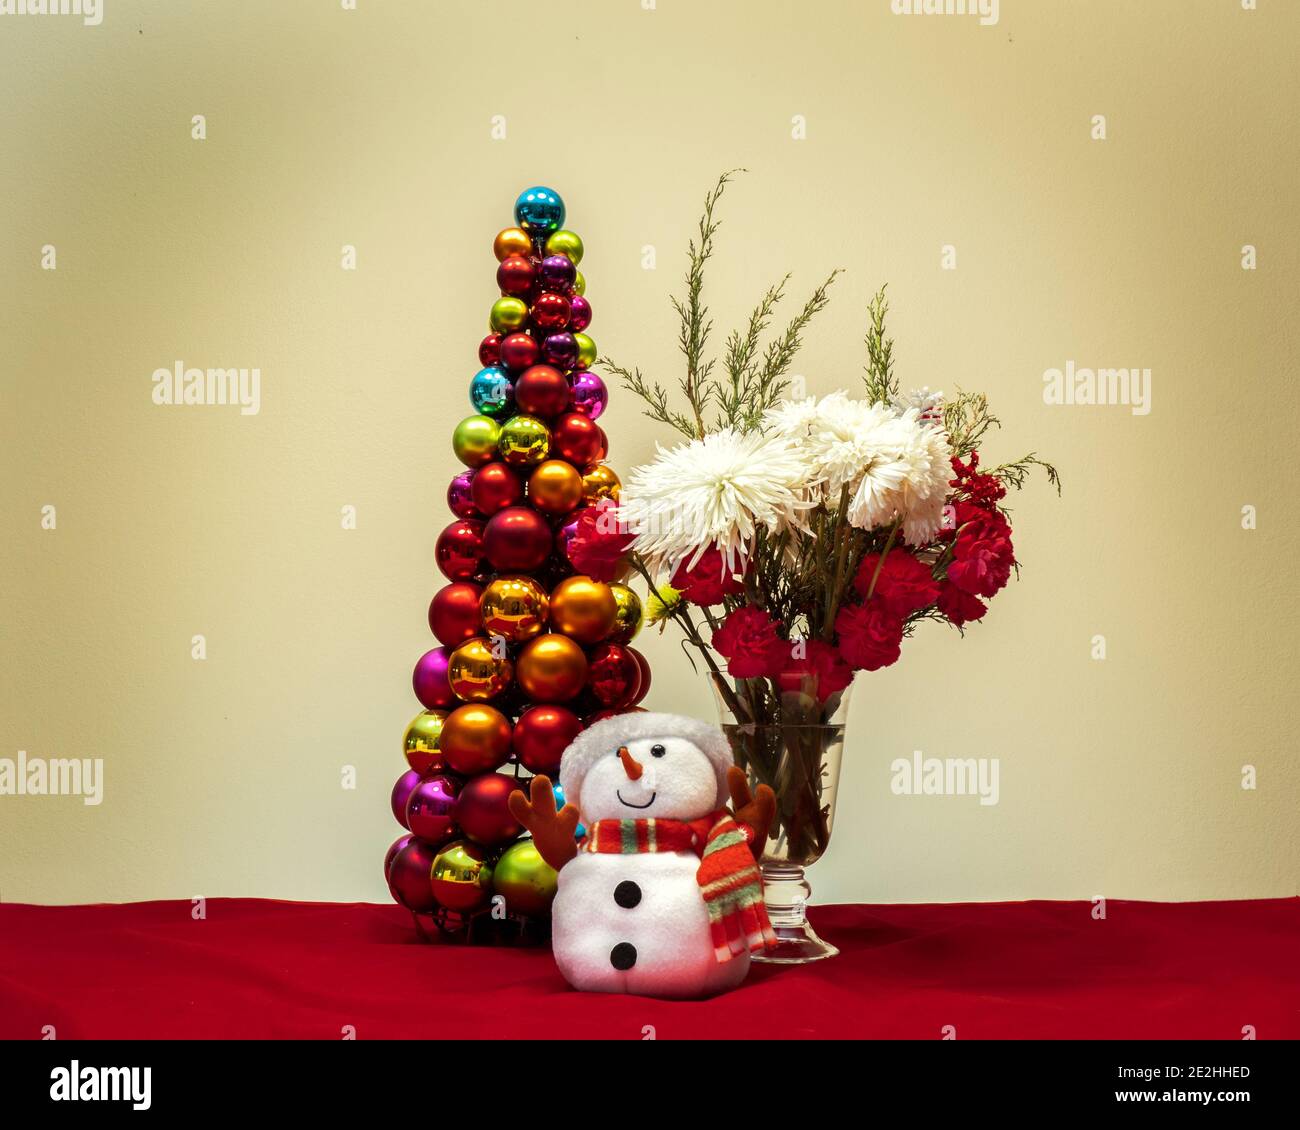 Weihnachtsszene mit Blumen Schneemann und weihnachtsbaum aus Glänzende dekorative Kugeln Ornamente Stockfoto